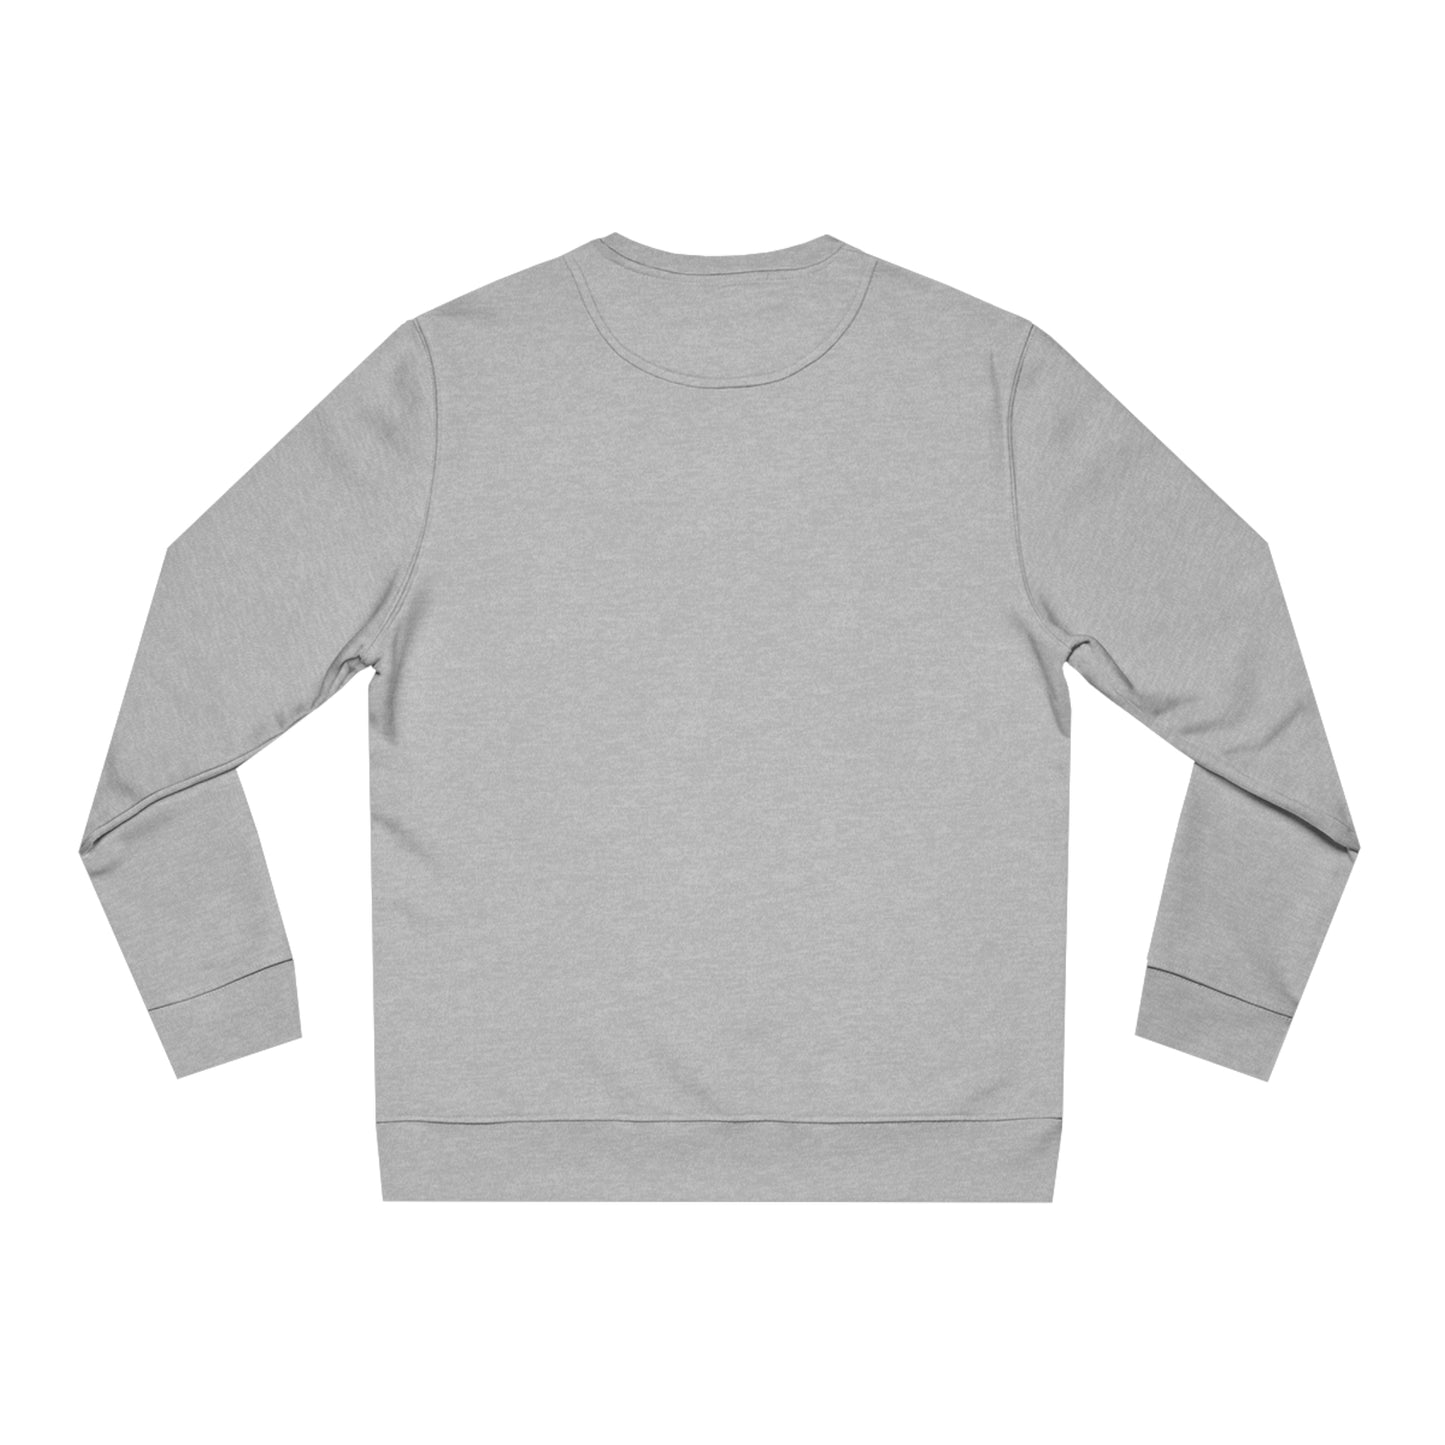 Bequemes klassisches Unisex-Sweatshirt für Katzenliebhaber, monochromes Sweatshirt, niedliches und langärmliges Katzenmotiv, Perserkatzen-Sweatshirt